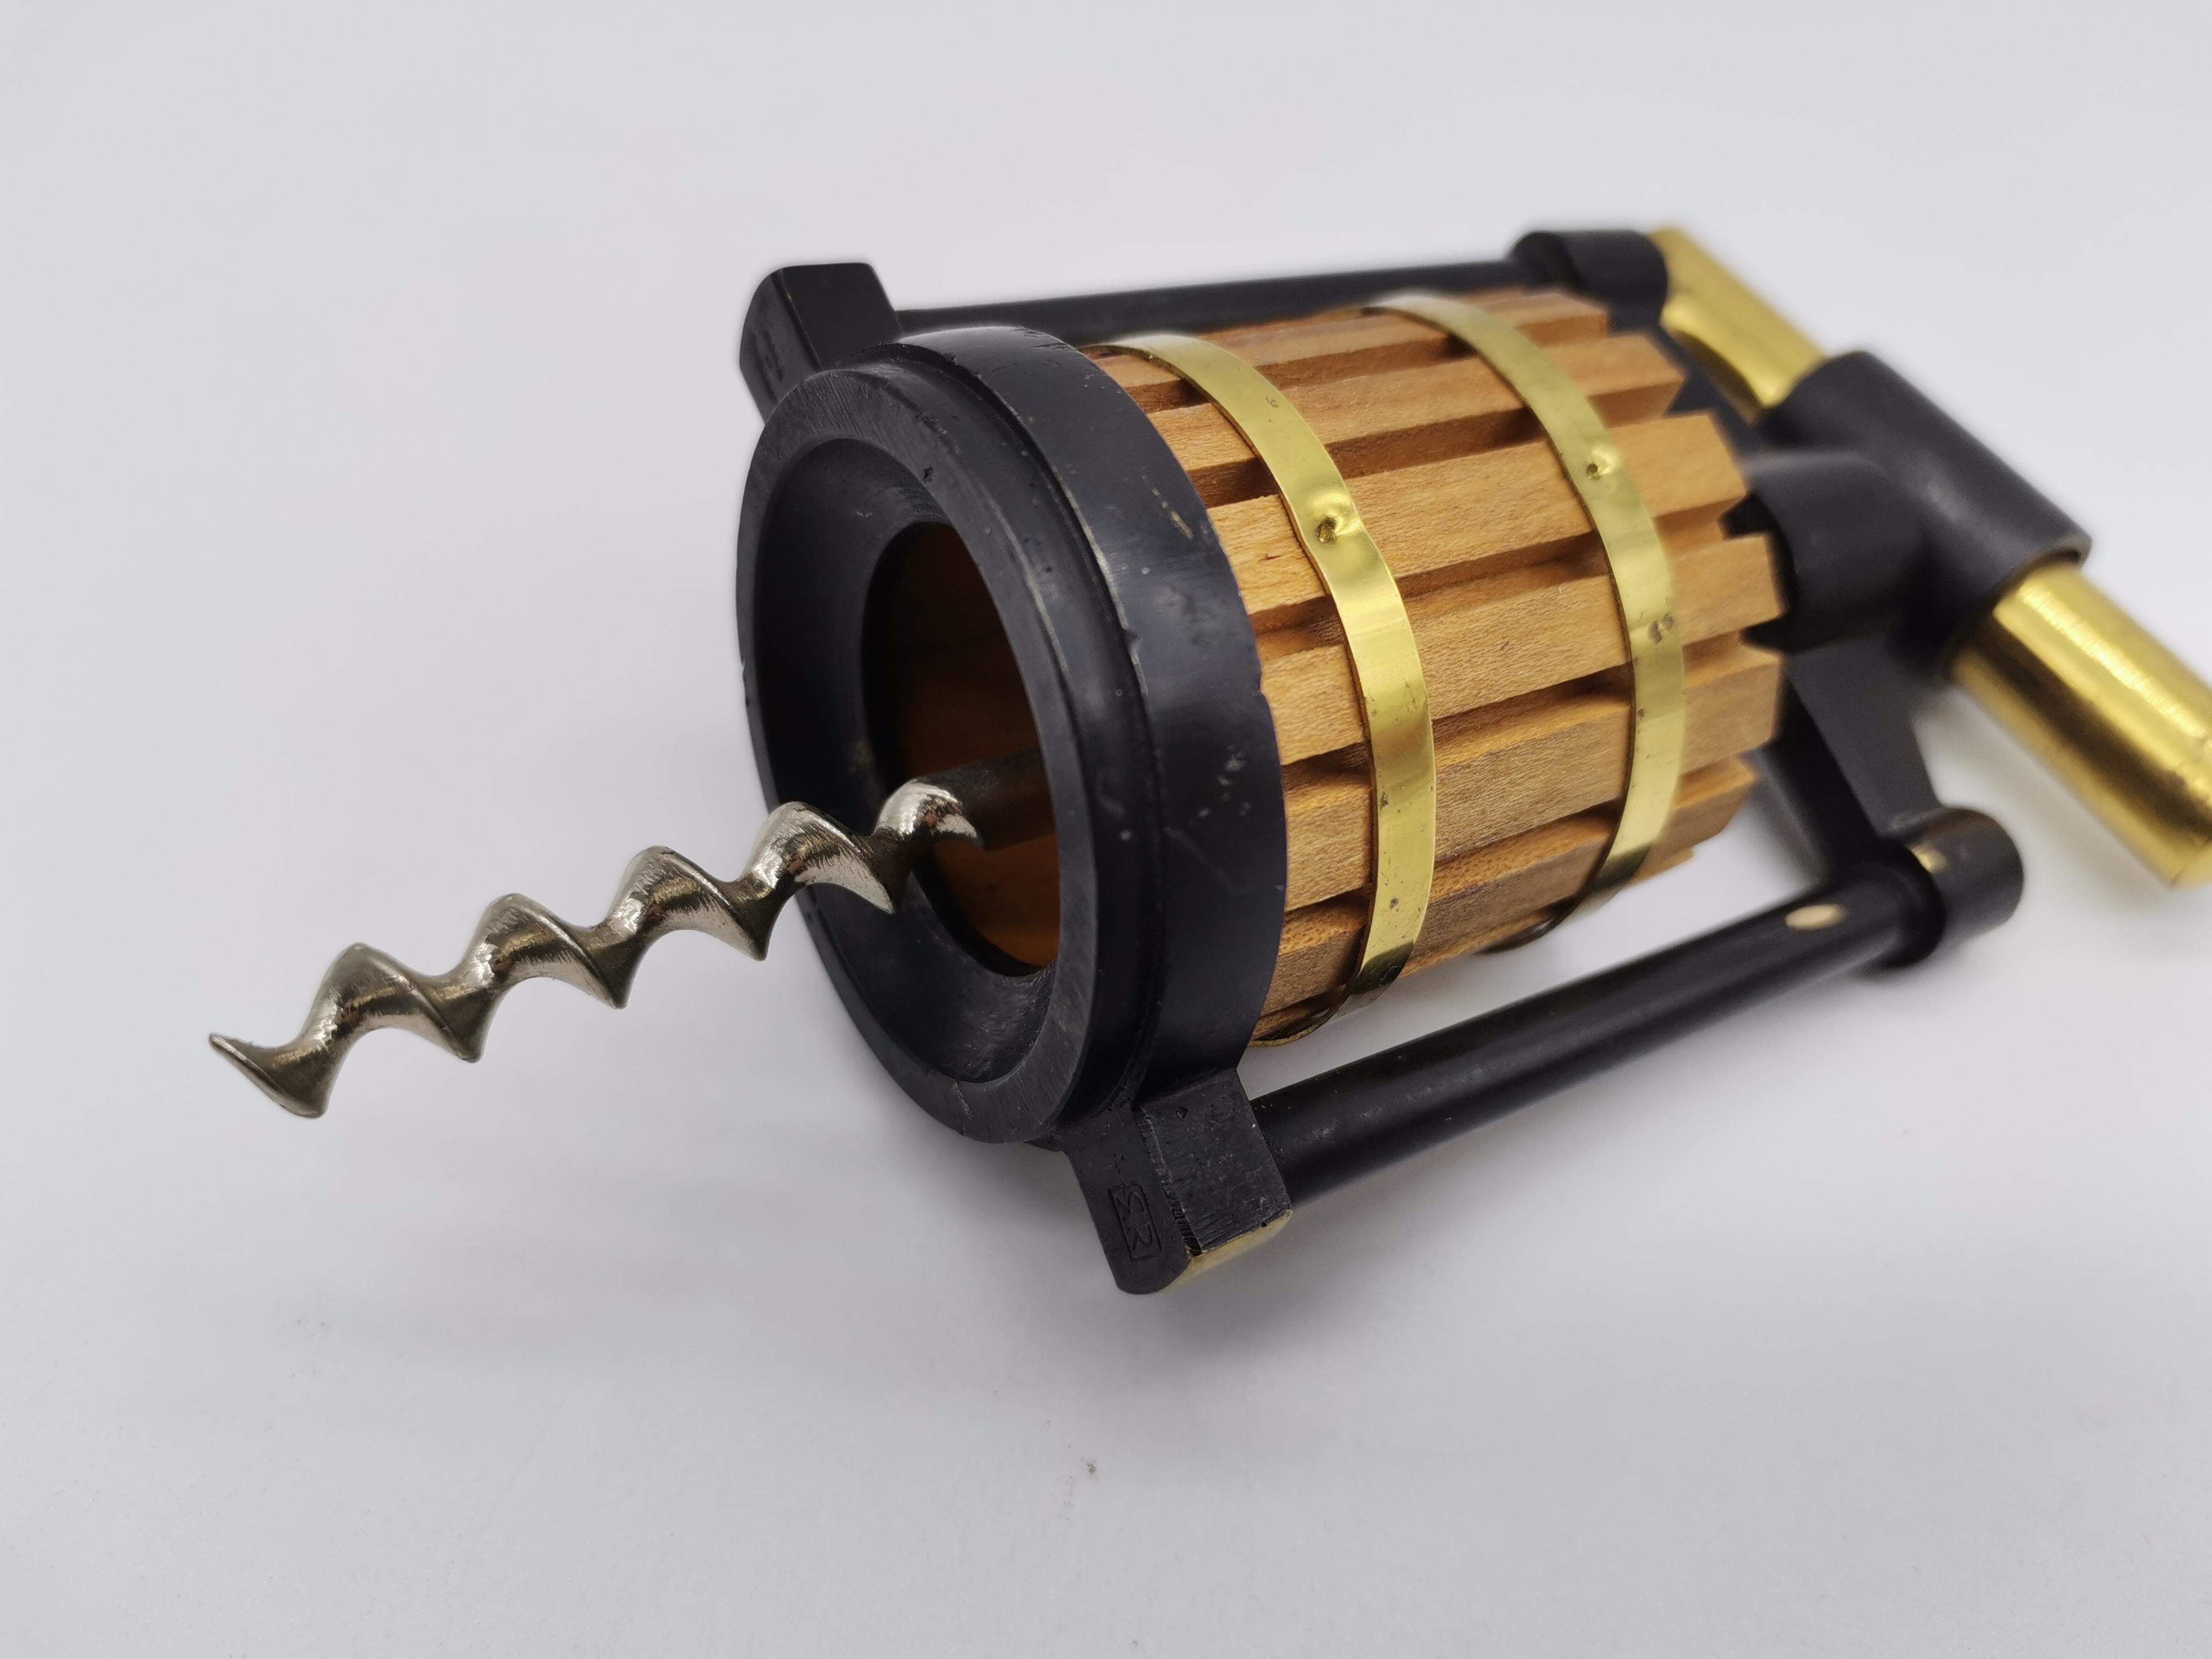 A cork screw in shape of a juice press by Richard Rohac.